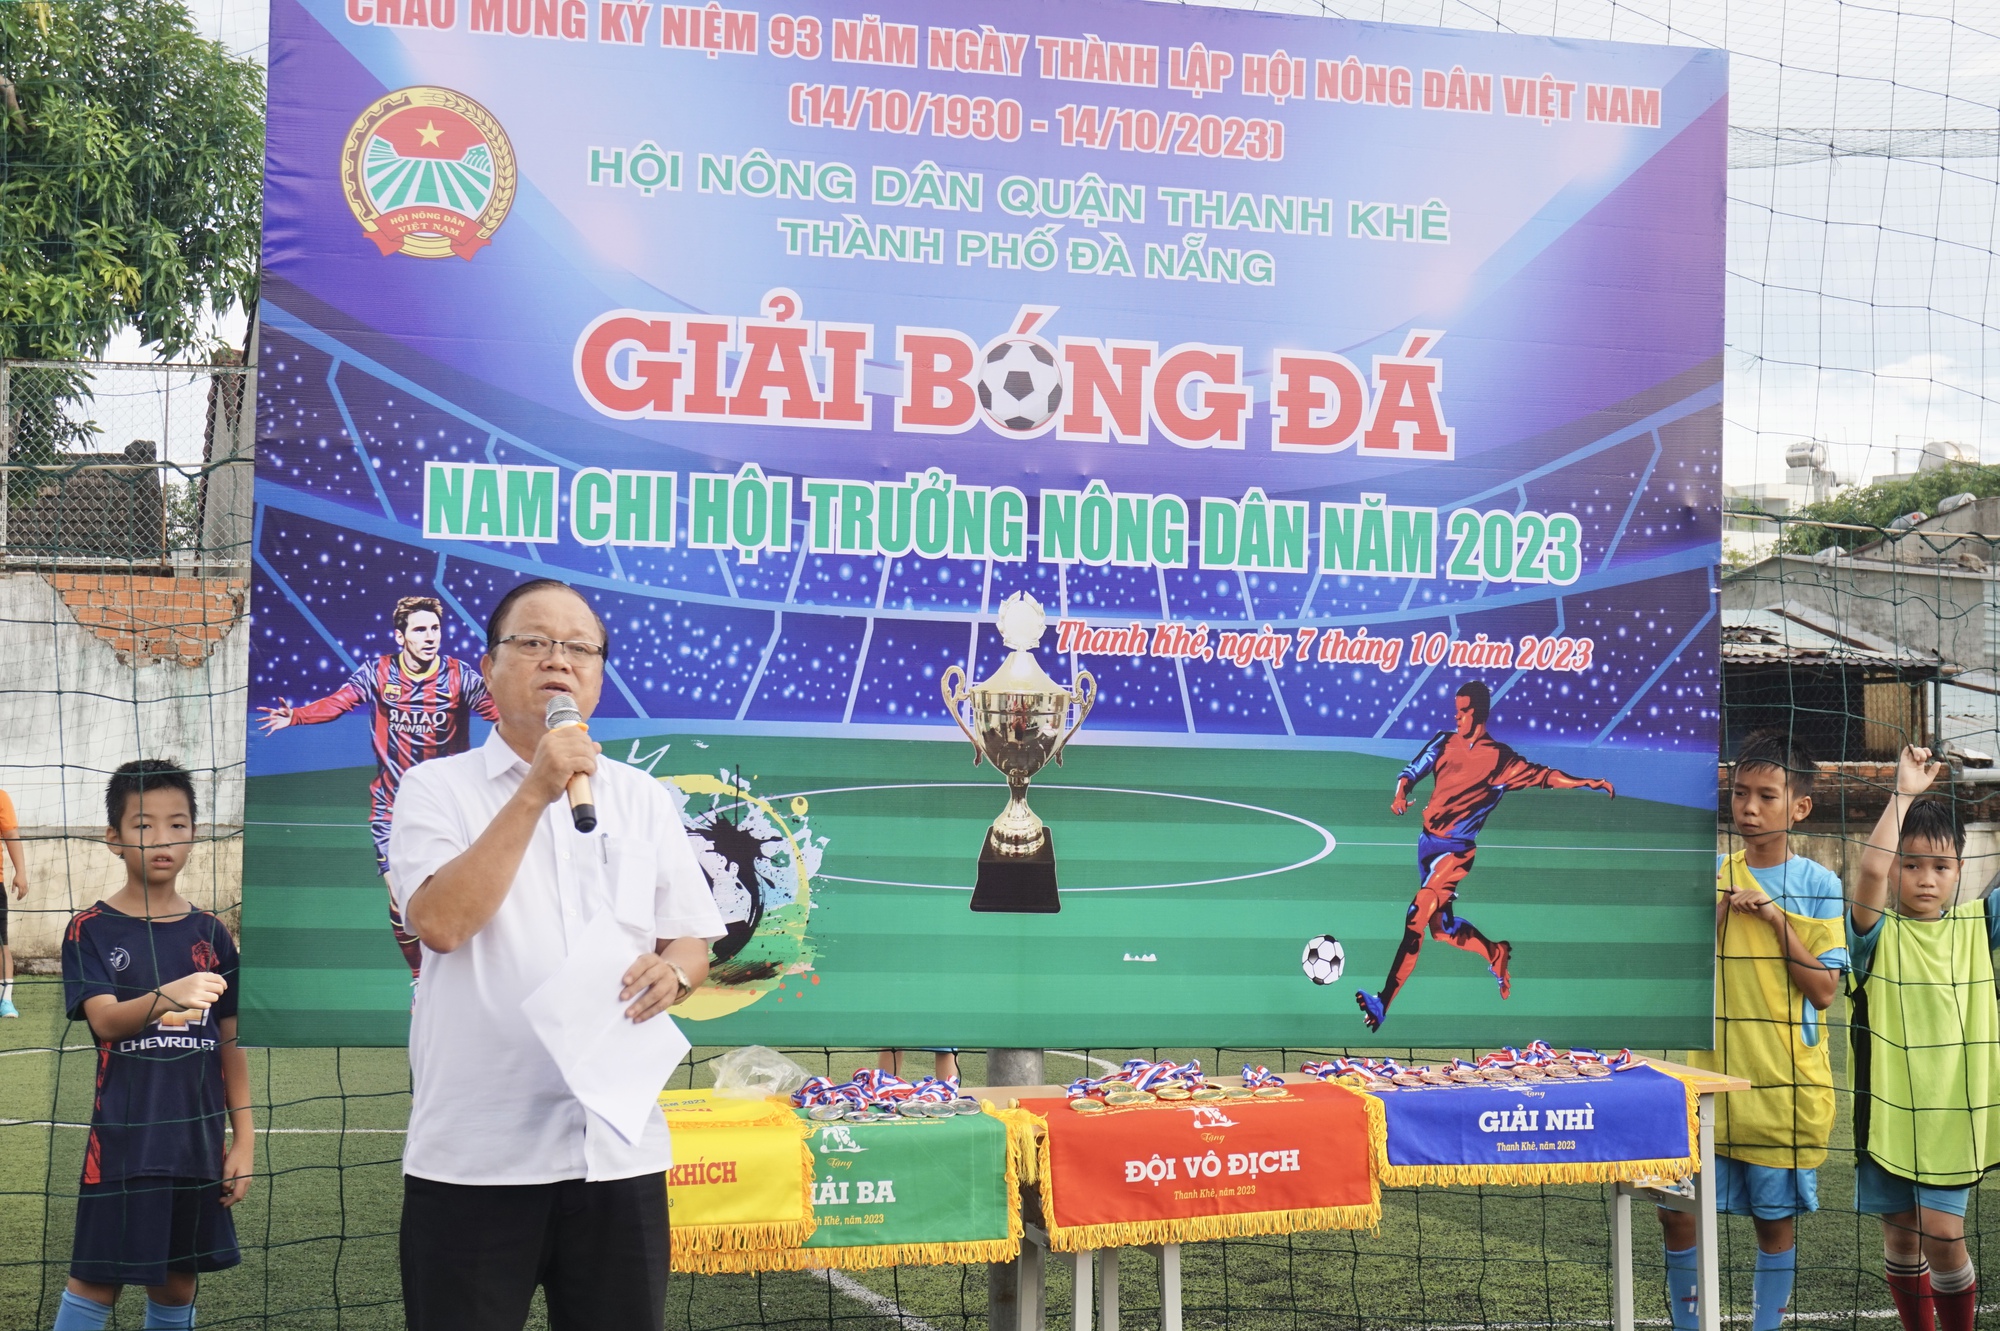 Đà Nẵng: Sôi nổi tranh tài Giải bóng đá nam Chi hội trưởng nông dân quận Thanh Khê - Ảnh 3.